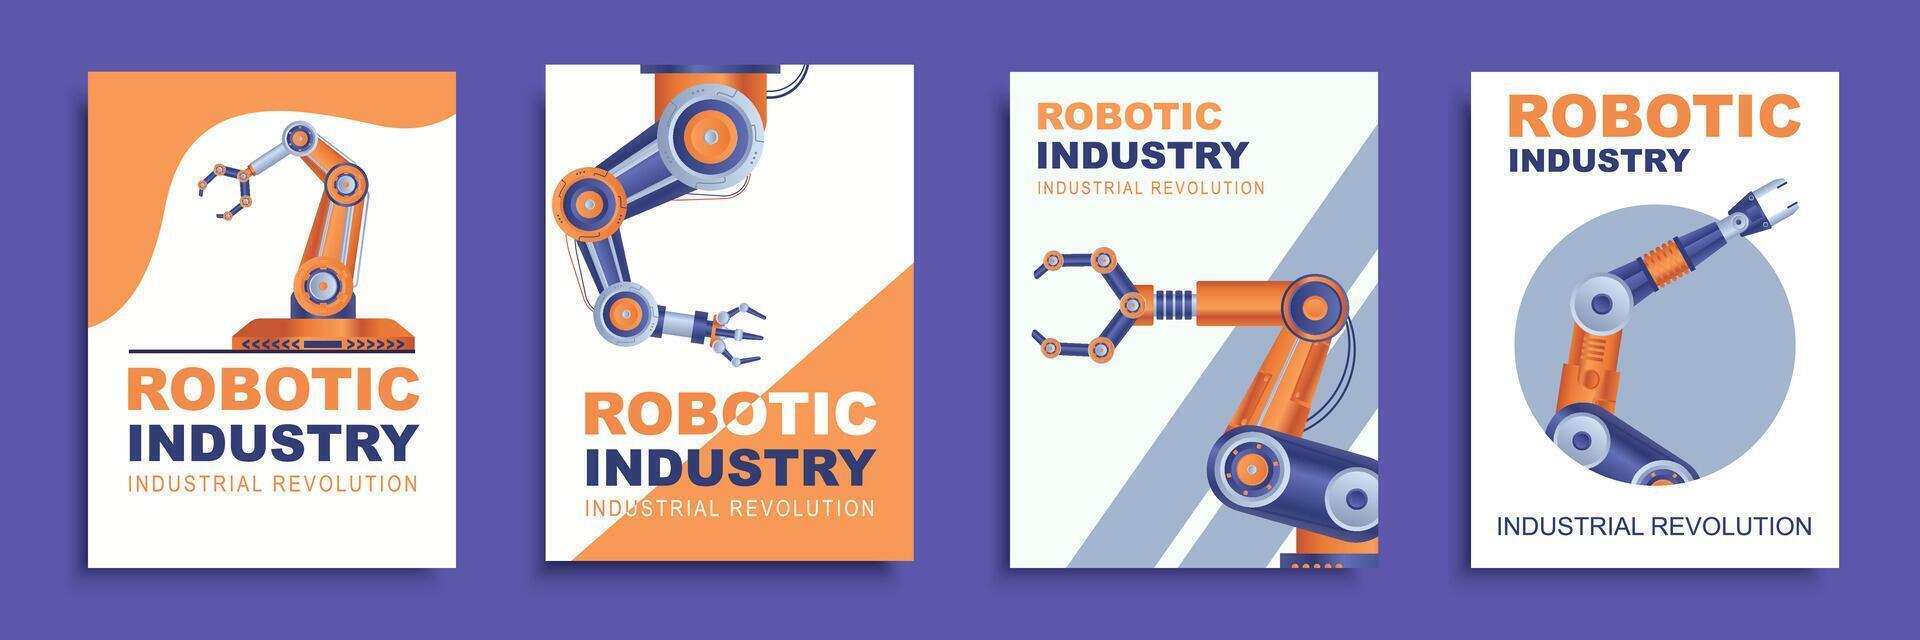 robotique industrie couverture brochure ensemble dans plat conception. affiche modèles avec automatique fabrication robotique bras pour industriel processus et fabrication processus à moderne usine. vecteur illustration